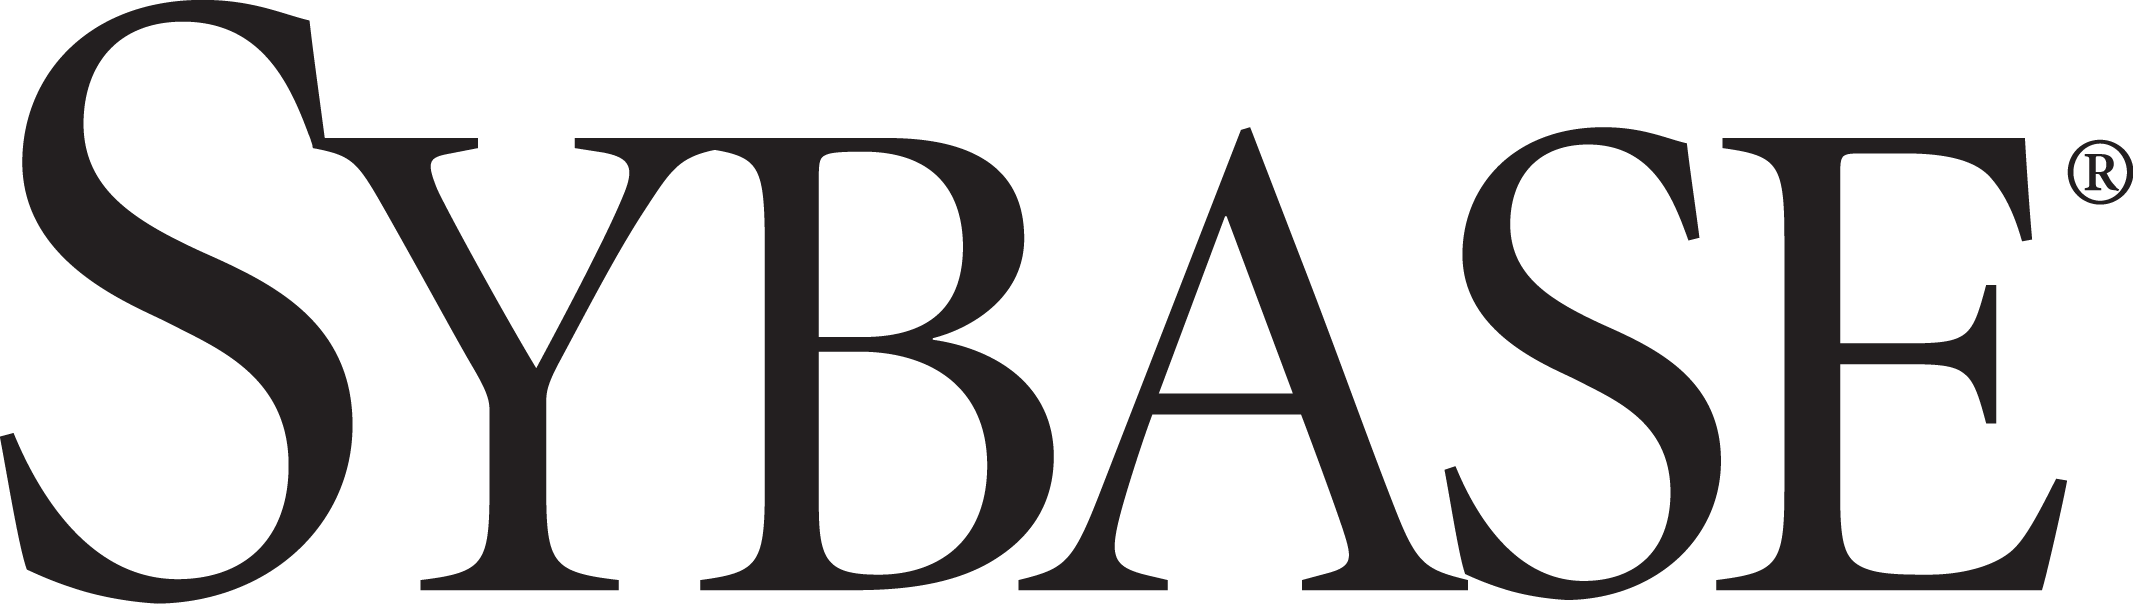 Sybase_logo